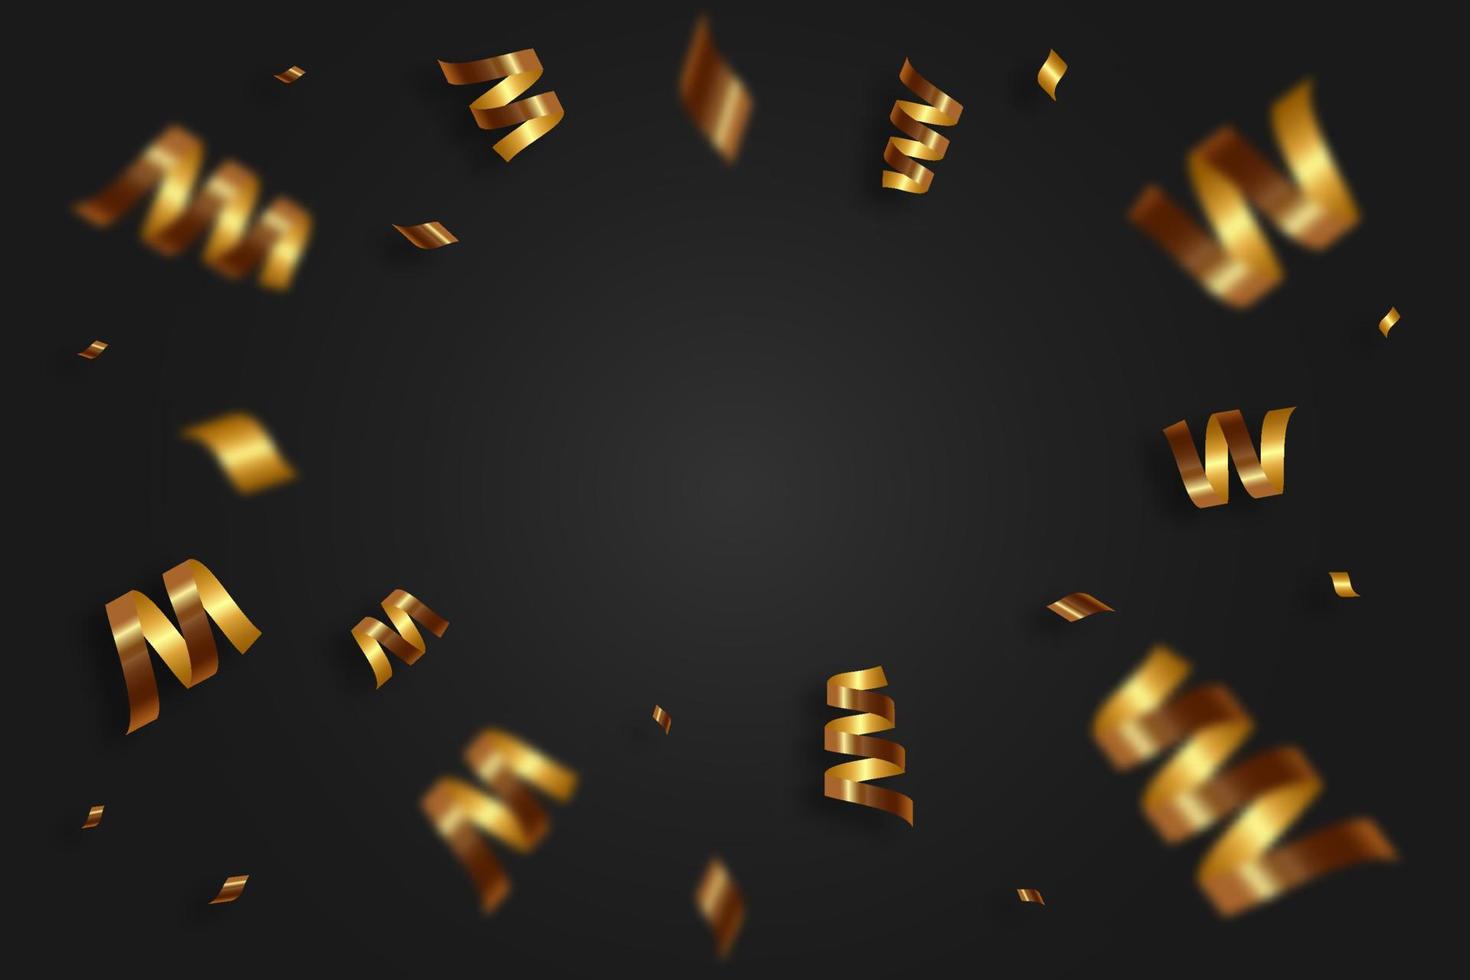 caída de confeti dorado brillante, cinta, serpentina sobre fondo negro. oropel festivo brillante de color dorado. vector